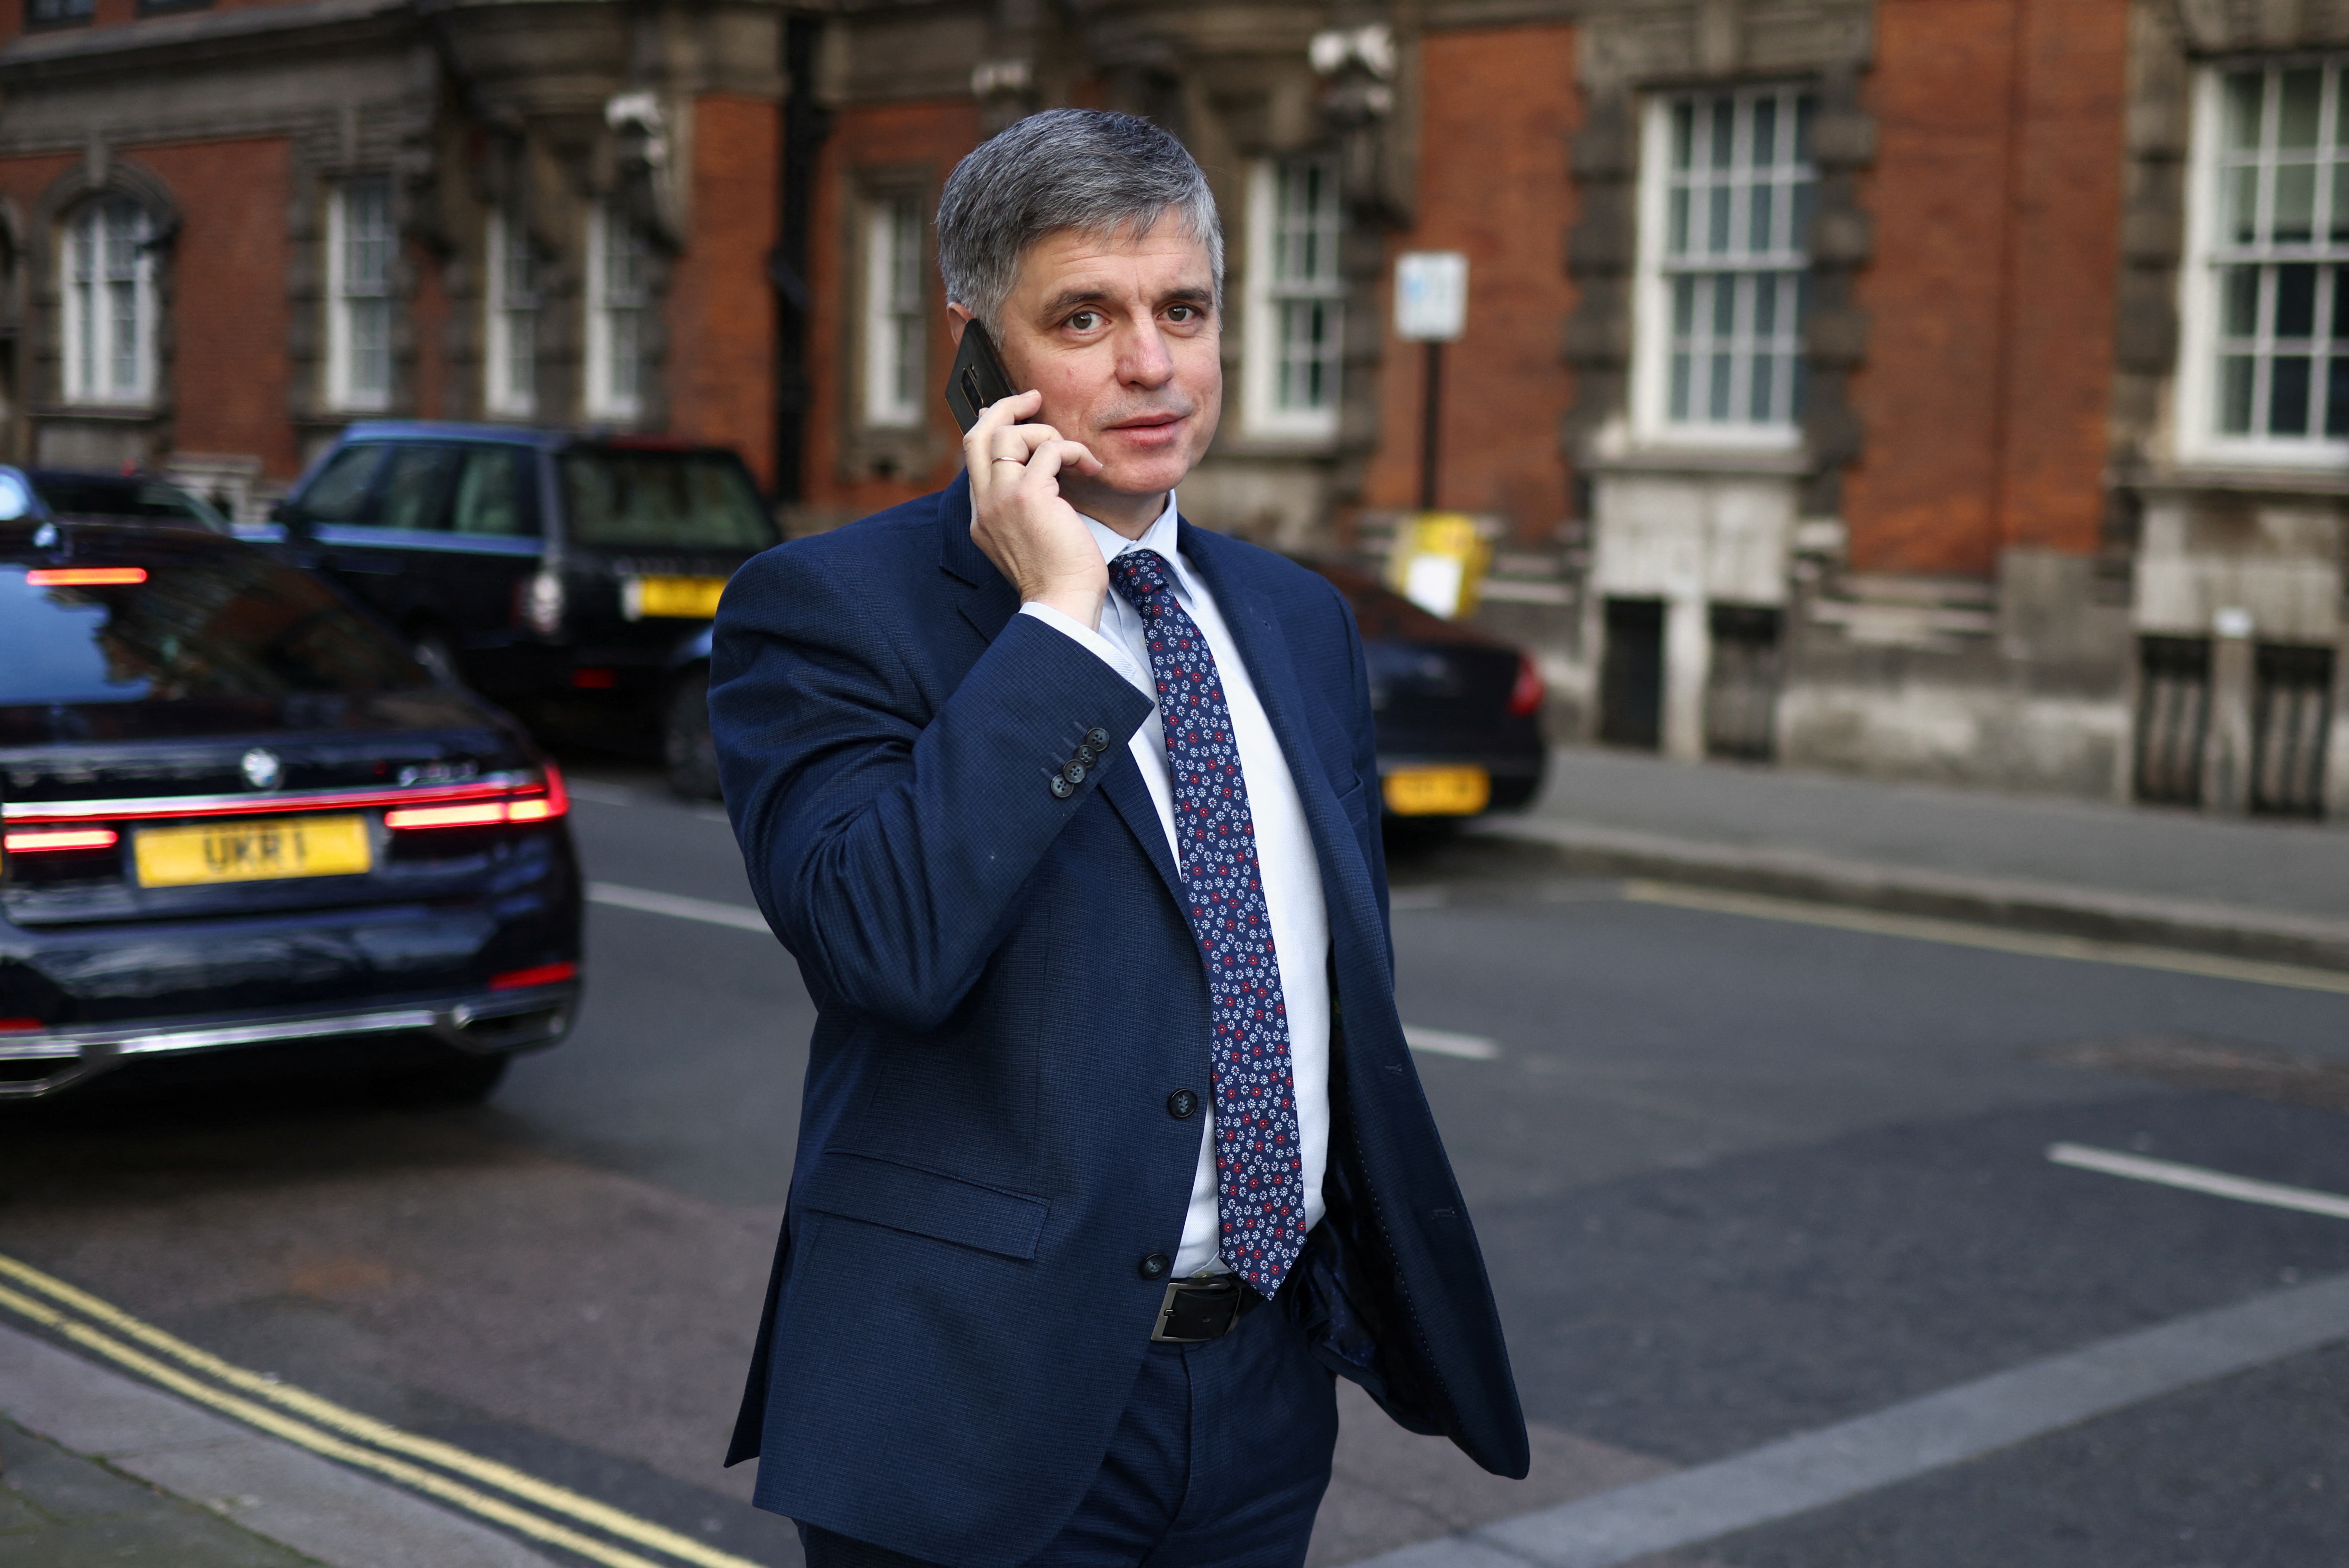 Ambasadorul Ucrainei în Regatul Unit, Vadim Prystaiko, mergând la Westminster, Londra, Marea Britanie, 9 februarie 2022. REUTERS/Tom Nicholson